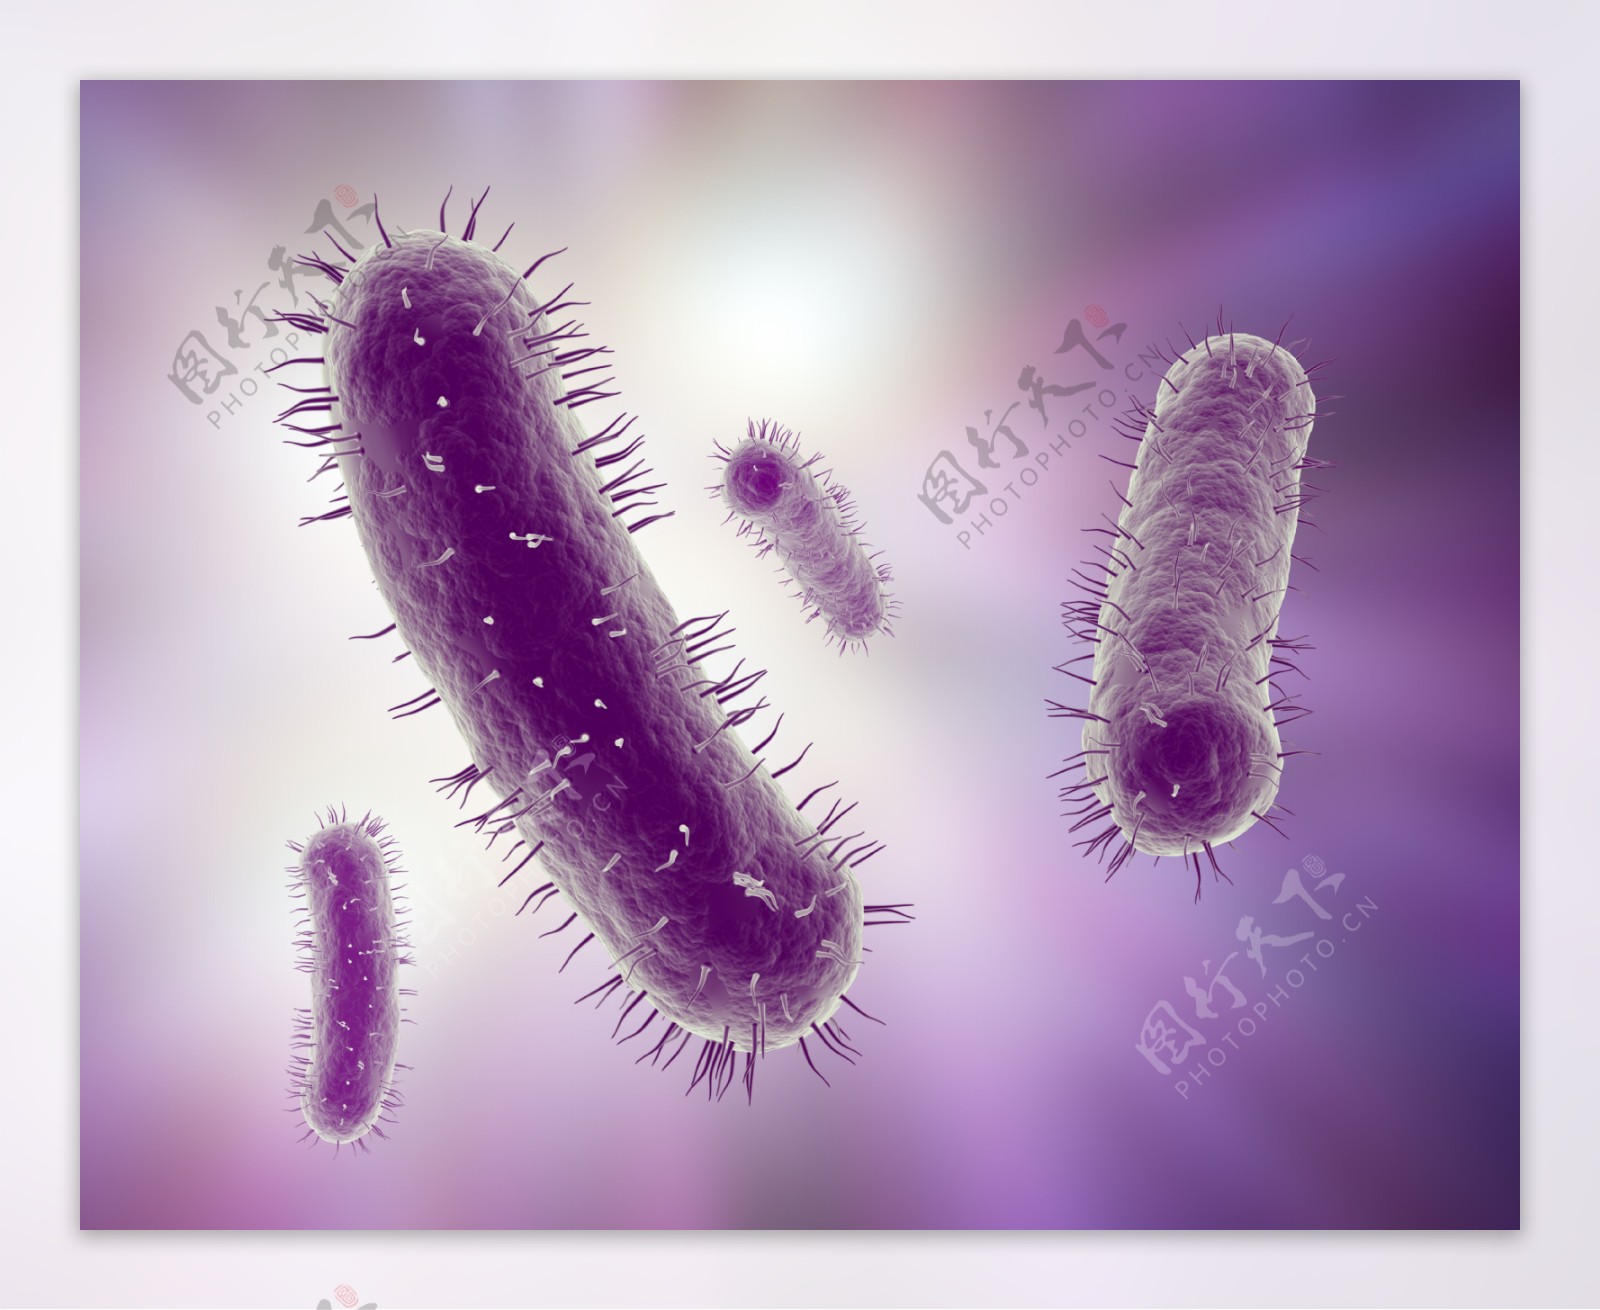 细菌生物图片